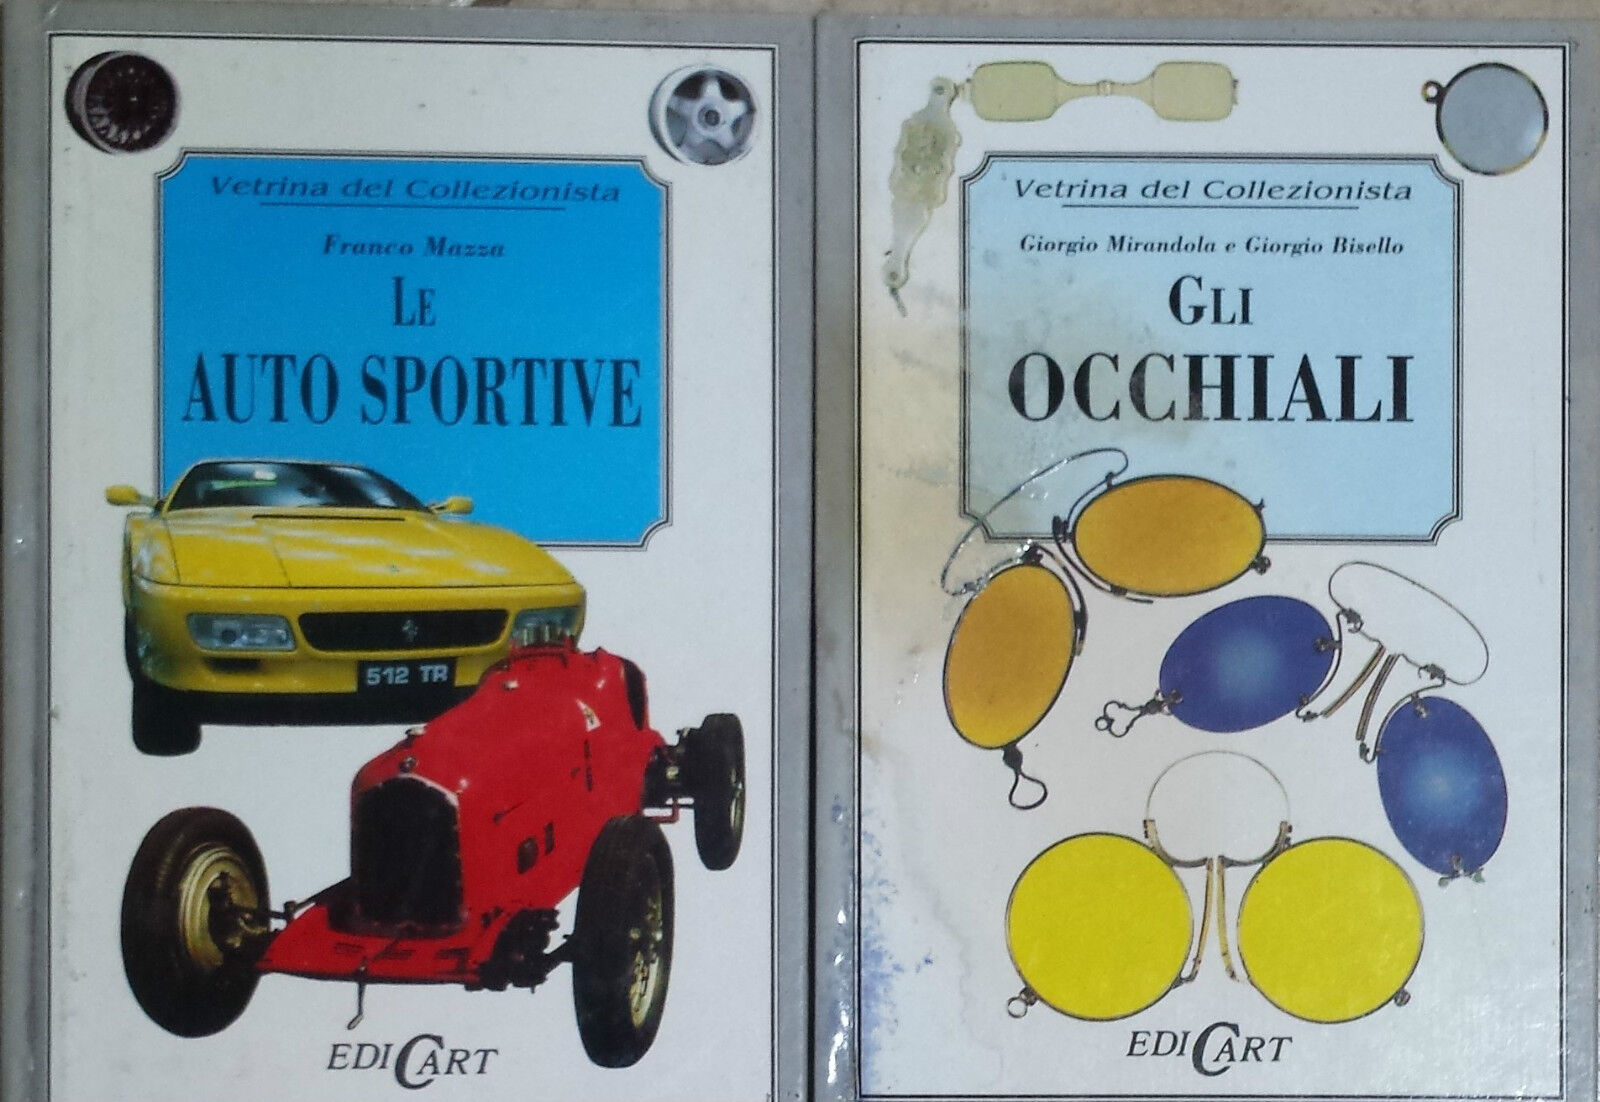 Vetrina del collezionista - Gli occhiali - Le auto sportive - - Edicart - G